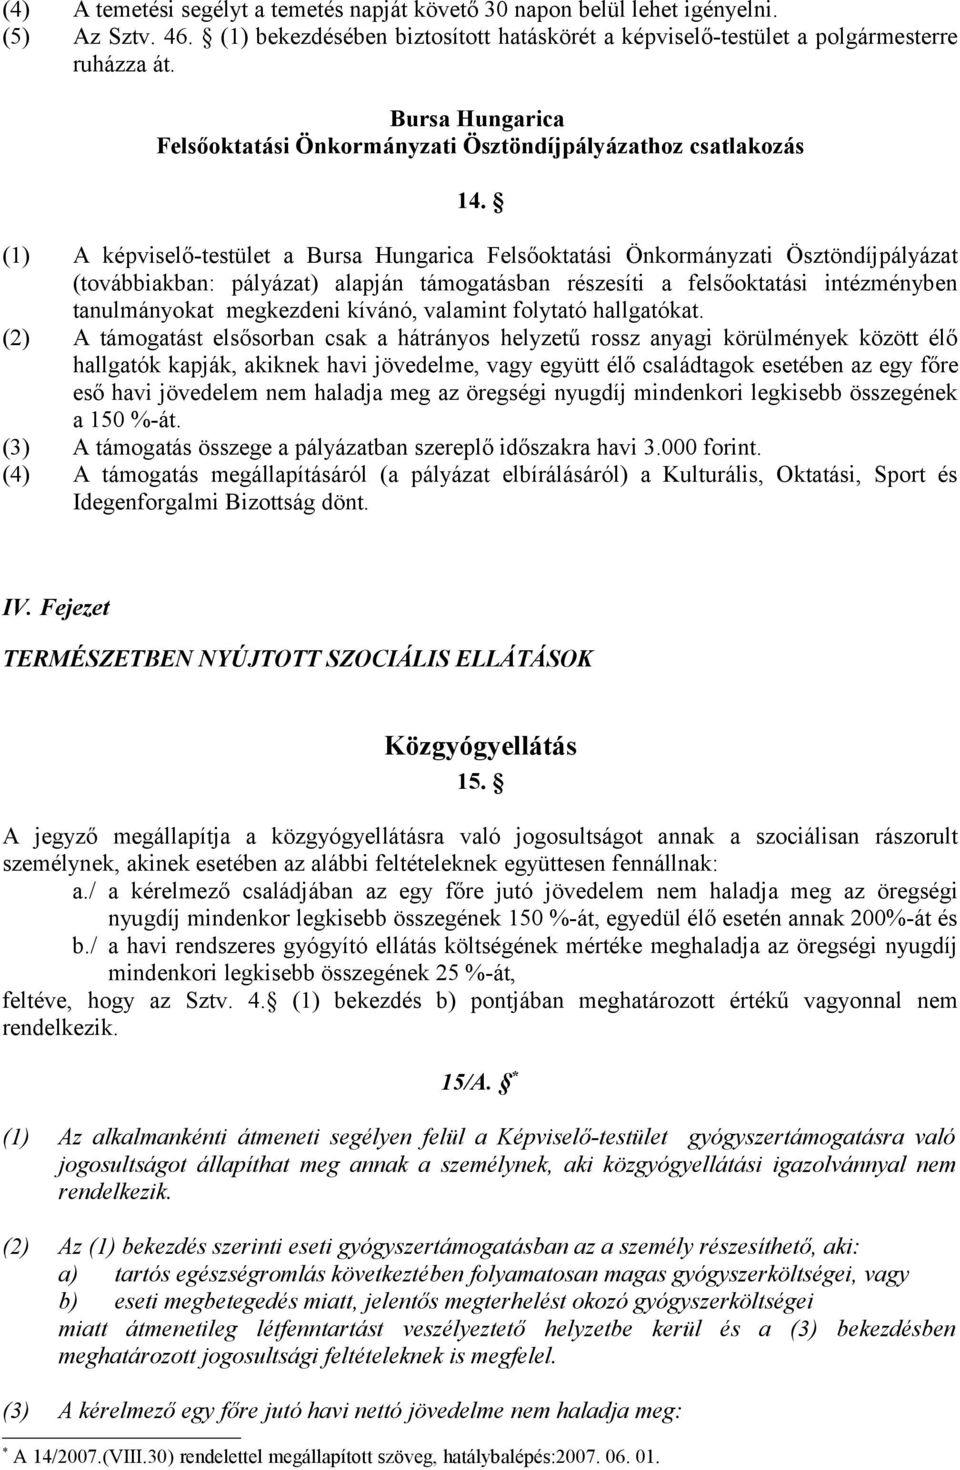 (1) A képviselő-testület a Bursa Hungarica Felsőoktatási Önkormányzati Ösztöndíjpályázat (továbbiakban: pályázat) alapján támogatásban részesíti a felsőoktatási intézményben tanulmányokat megkezdeni